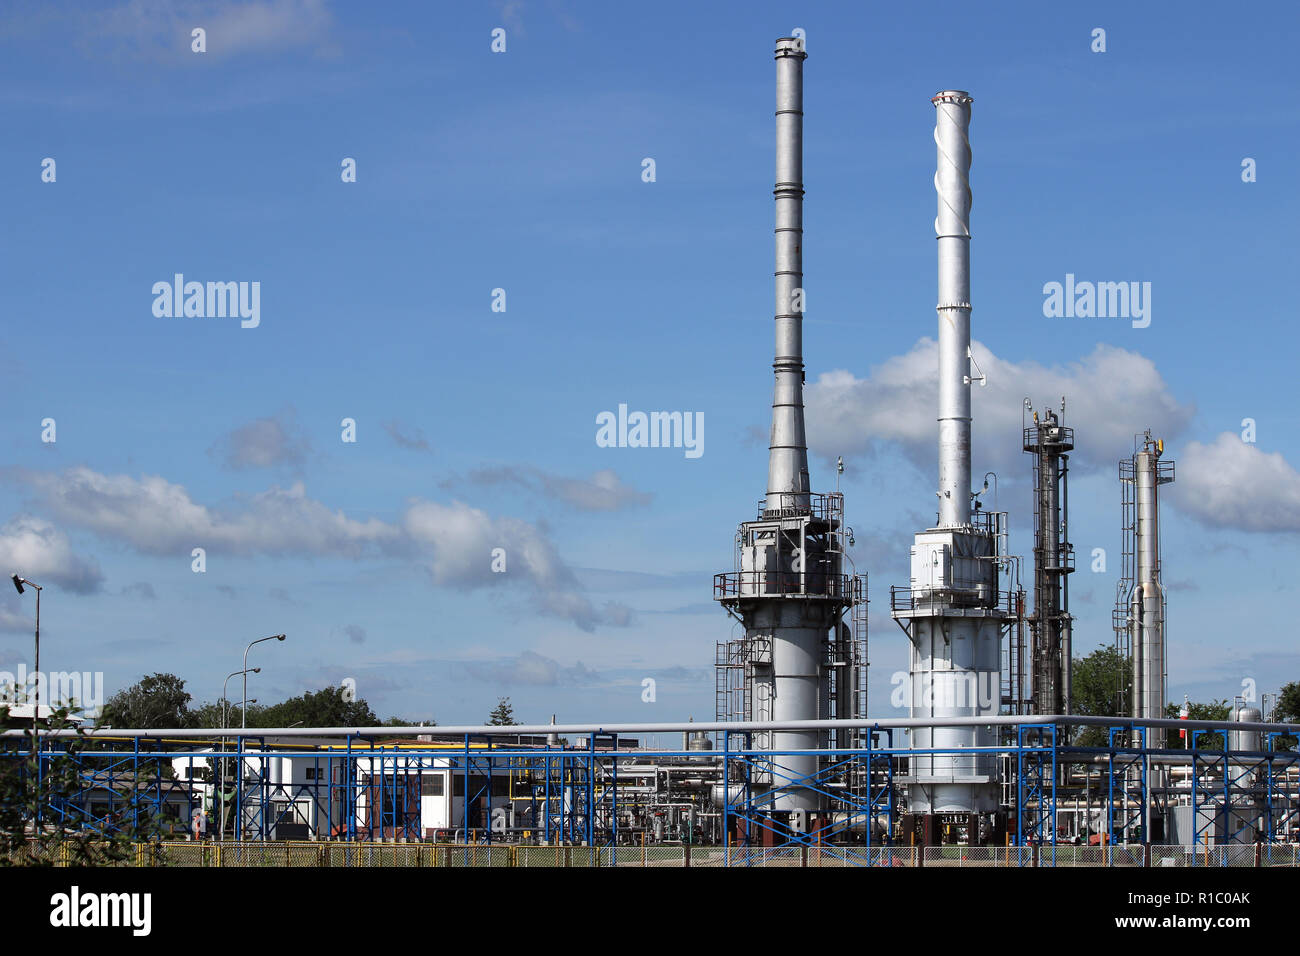 Les cheminées de la raffinerie usine pétrochimique et l'industrie des pipelines pétroliers Banque D'Images